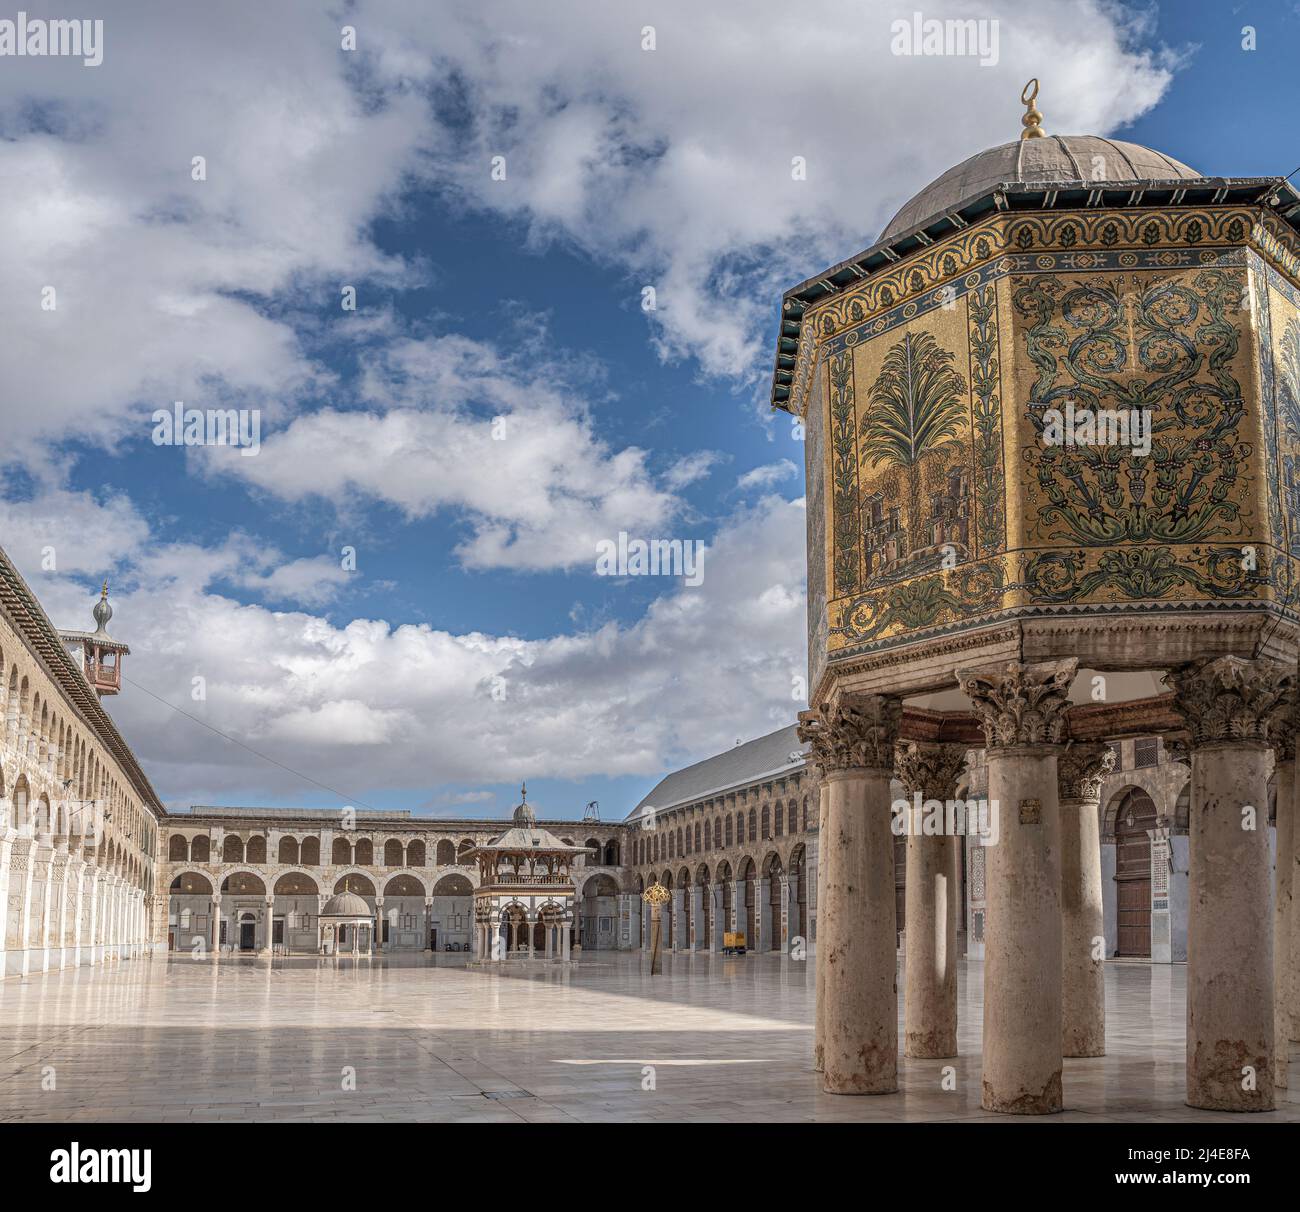 The Umayyad Mosque of Damascus, Syria Stock Photo